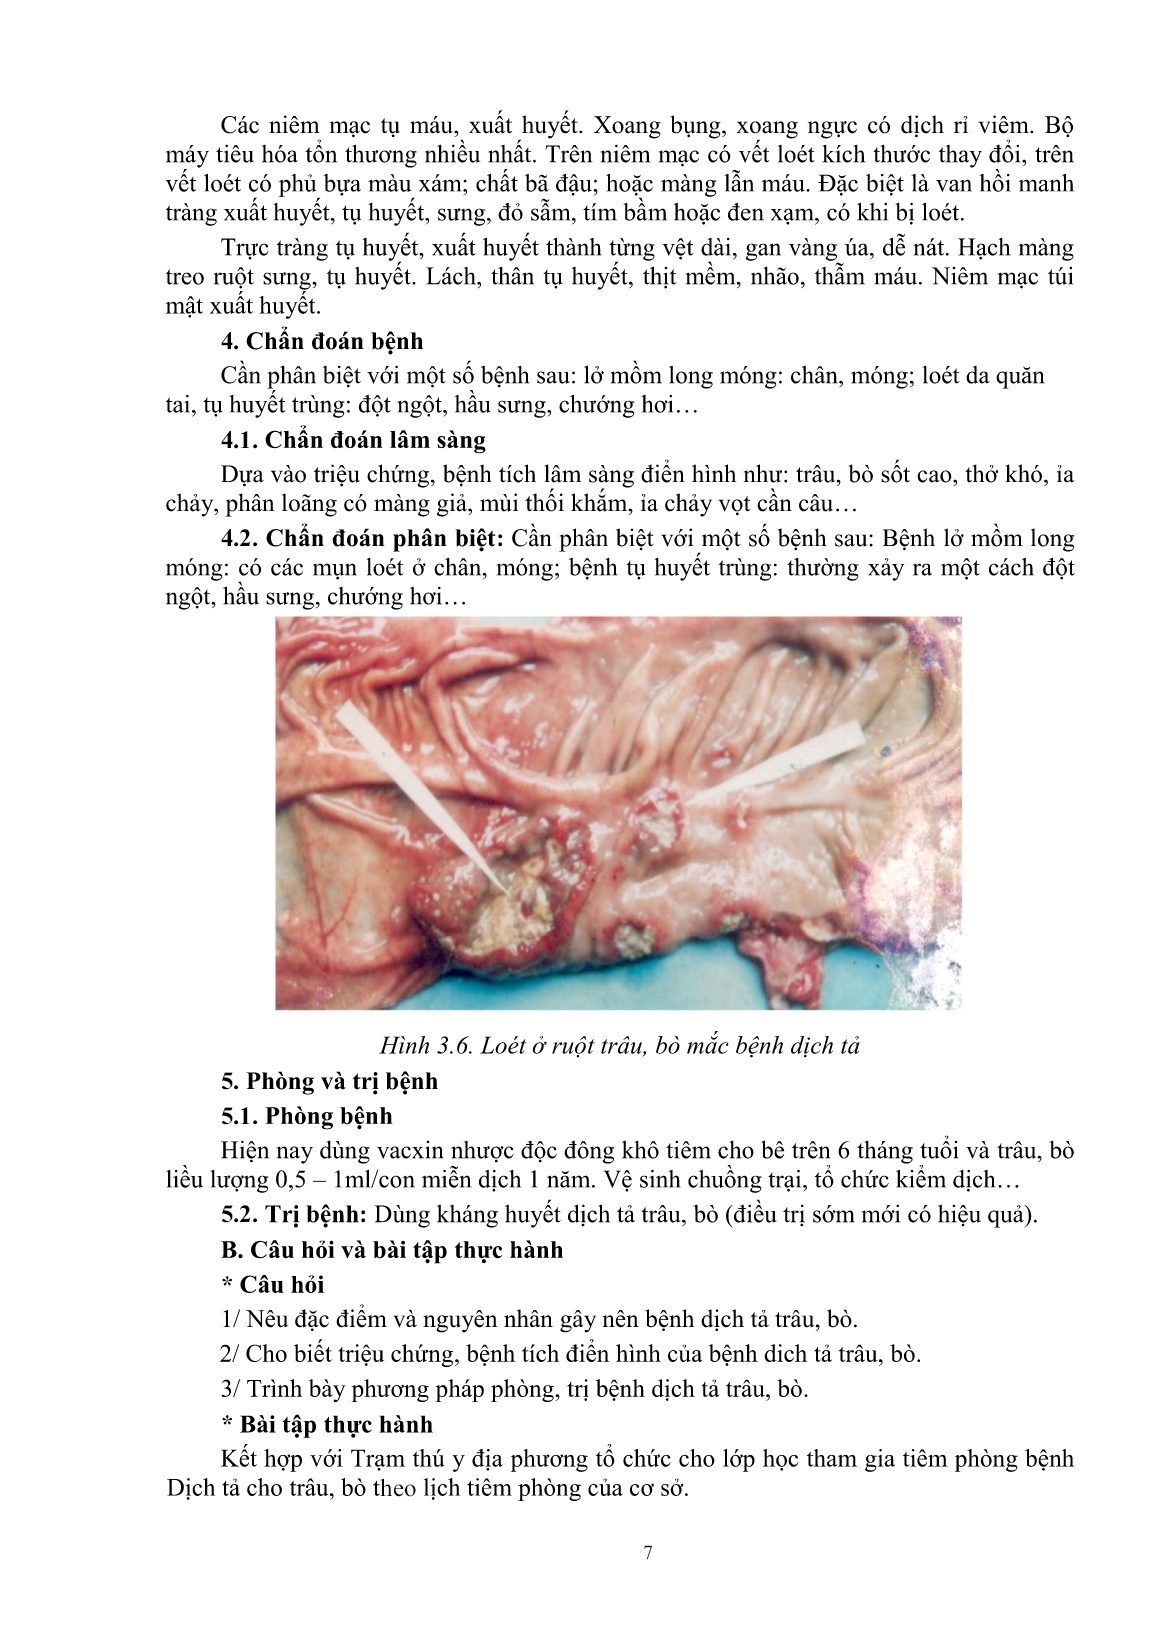 Giáo trình mô đun Phòng và trị bệnh cho trâu, bò (Trình độ: Đào tạo dưới 3 tháng) trang 9